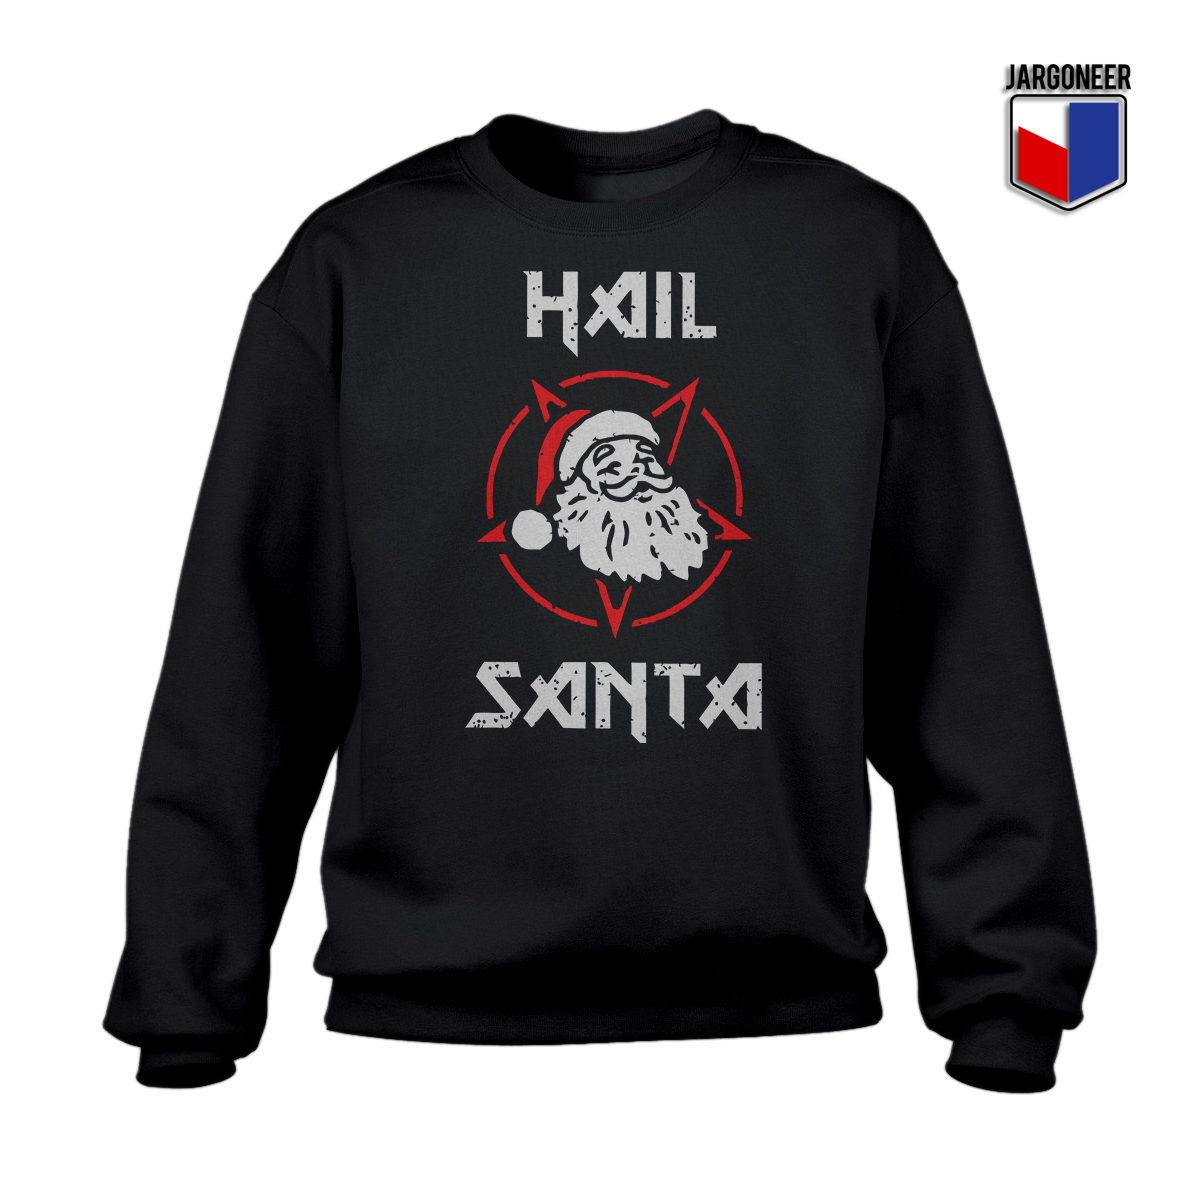 Hail Satan Claus Black SS - Shop Unique Graphic Cool Shirt Designs